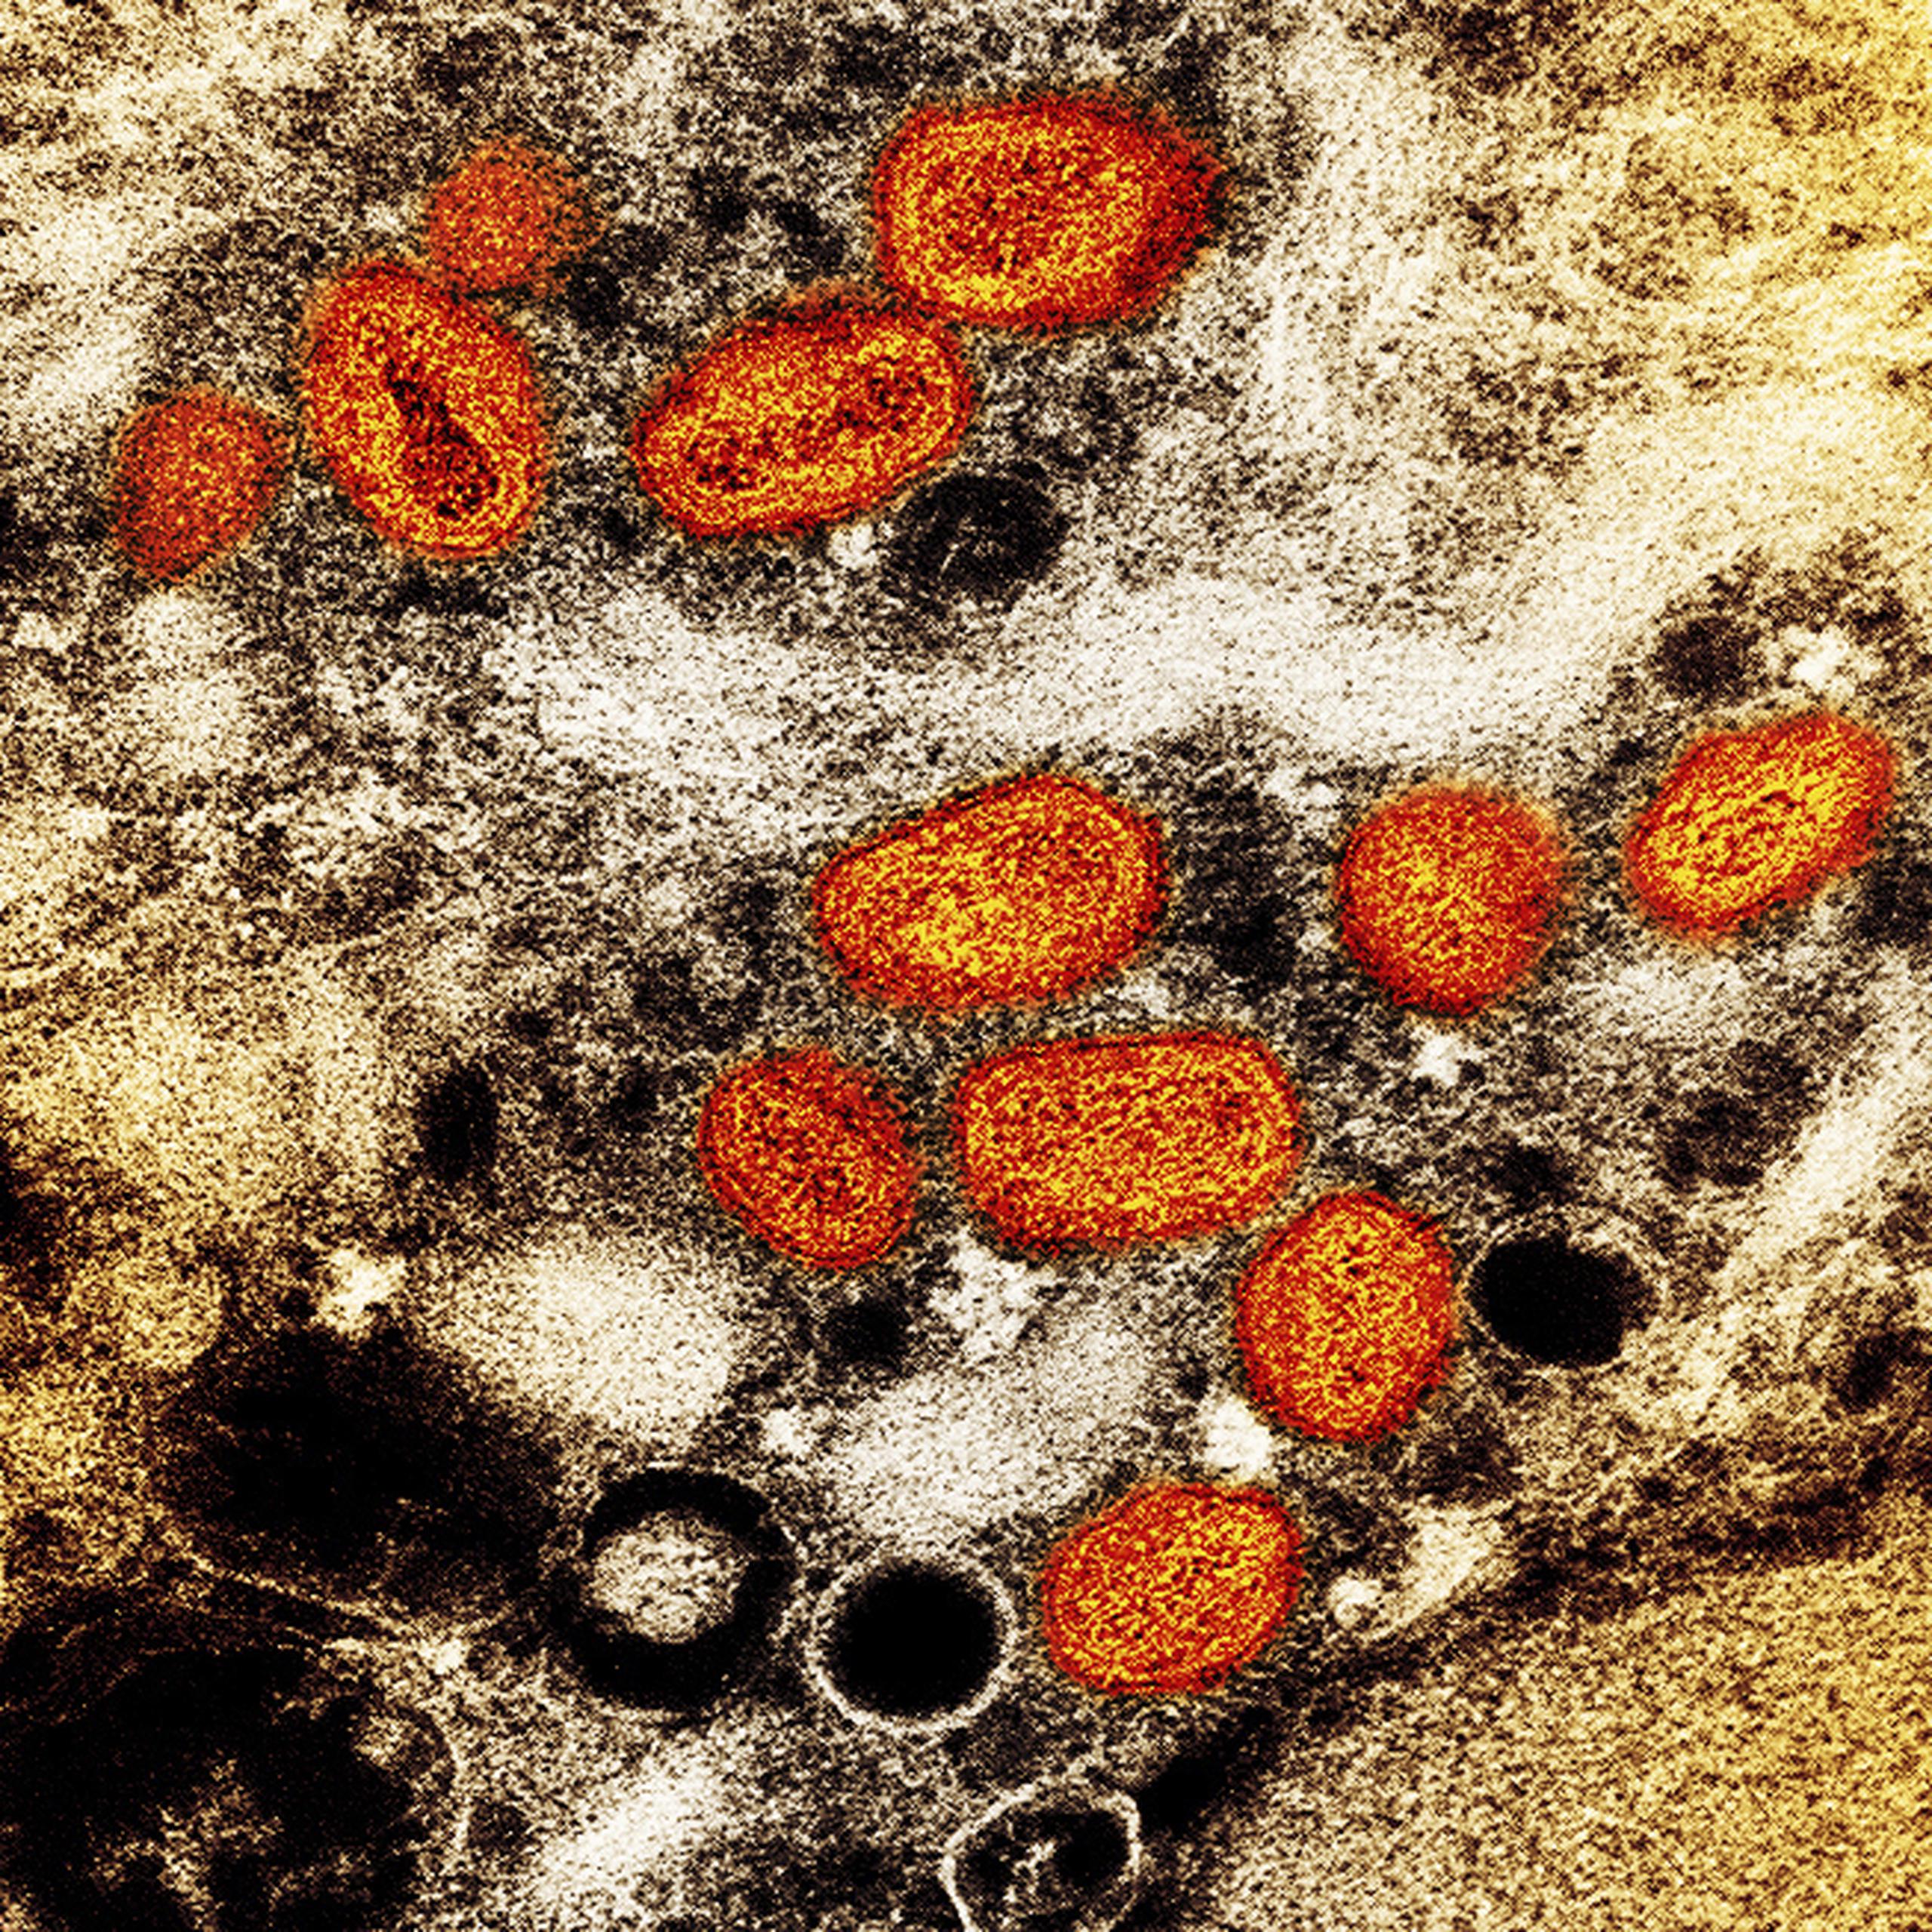 Esta imagen difundida por el Instituto Nacional de Alergias y Enfermedades Infecciosas de Estados Unidos muestra una imagen a color captada con un microscopio electrónico de barrido en el que se ven partículas de viruela del mono, en anaranjado, encontradas dentro de una célula infectada (marrón) cultivada en un laboratorio. (NIAID via AP)